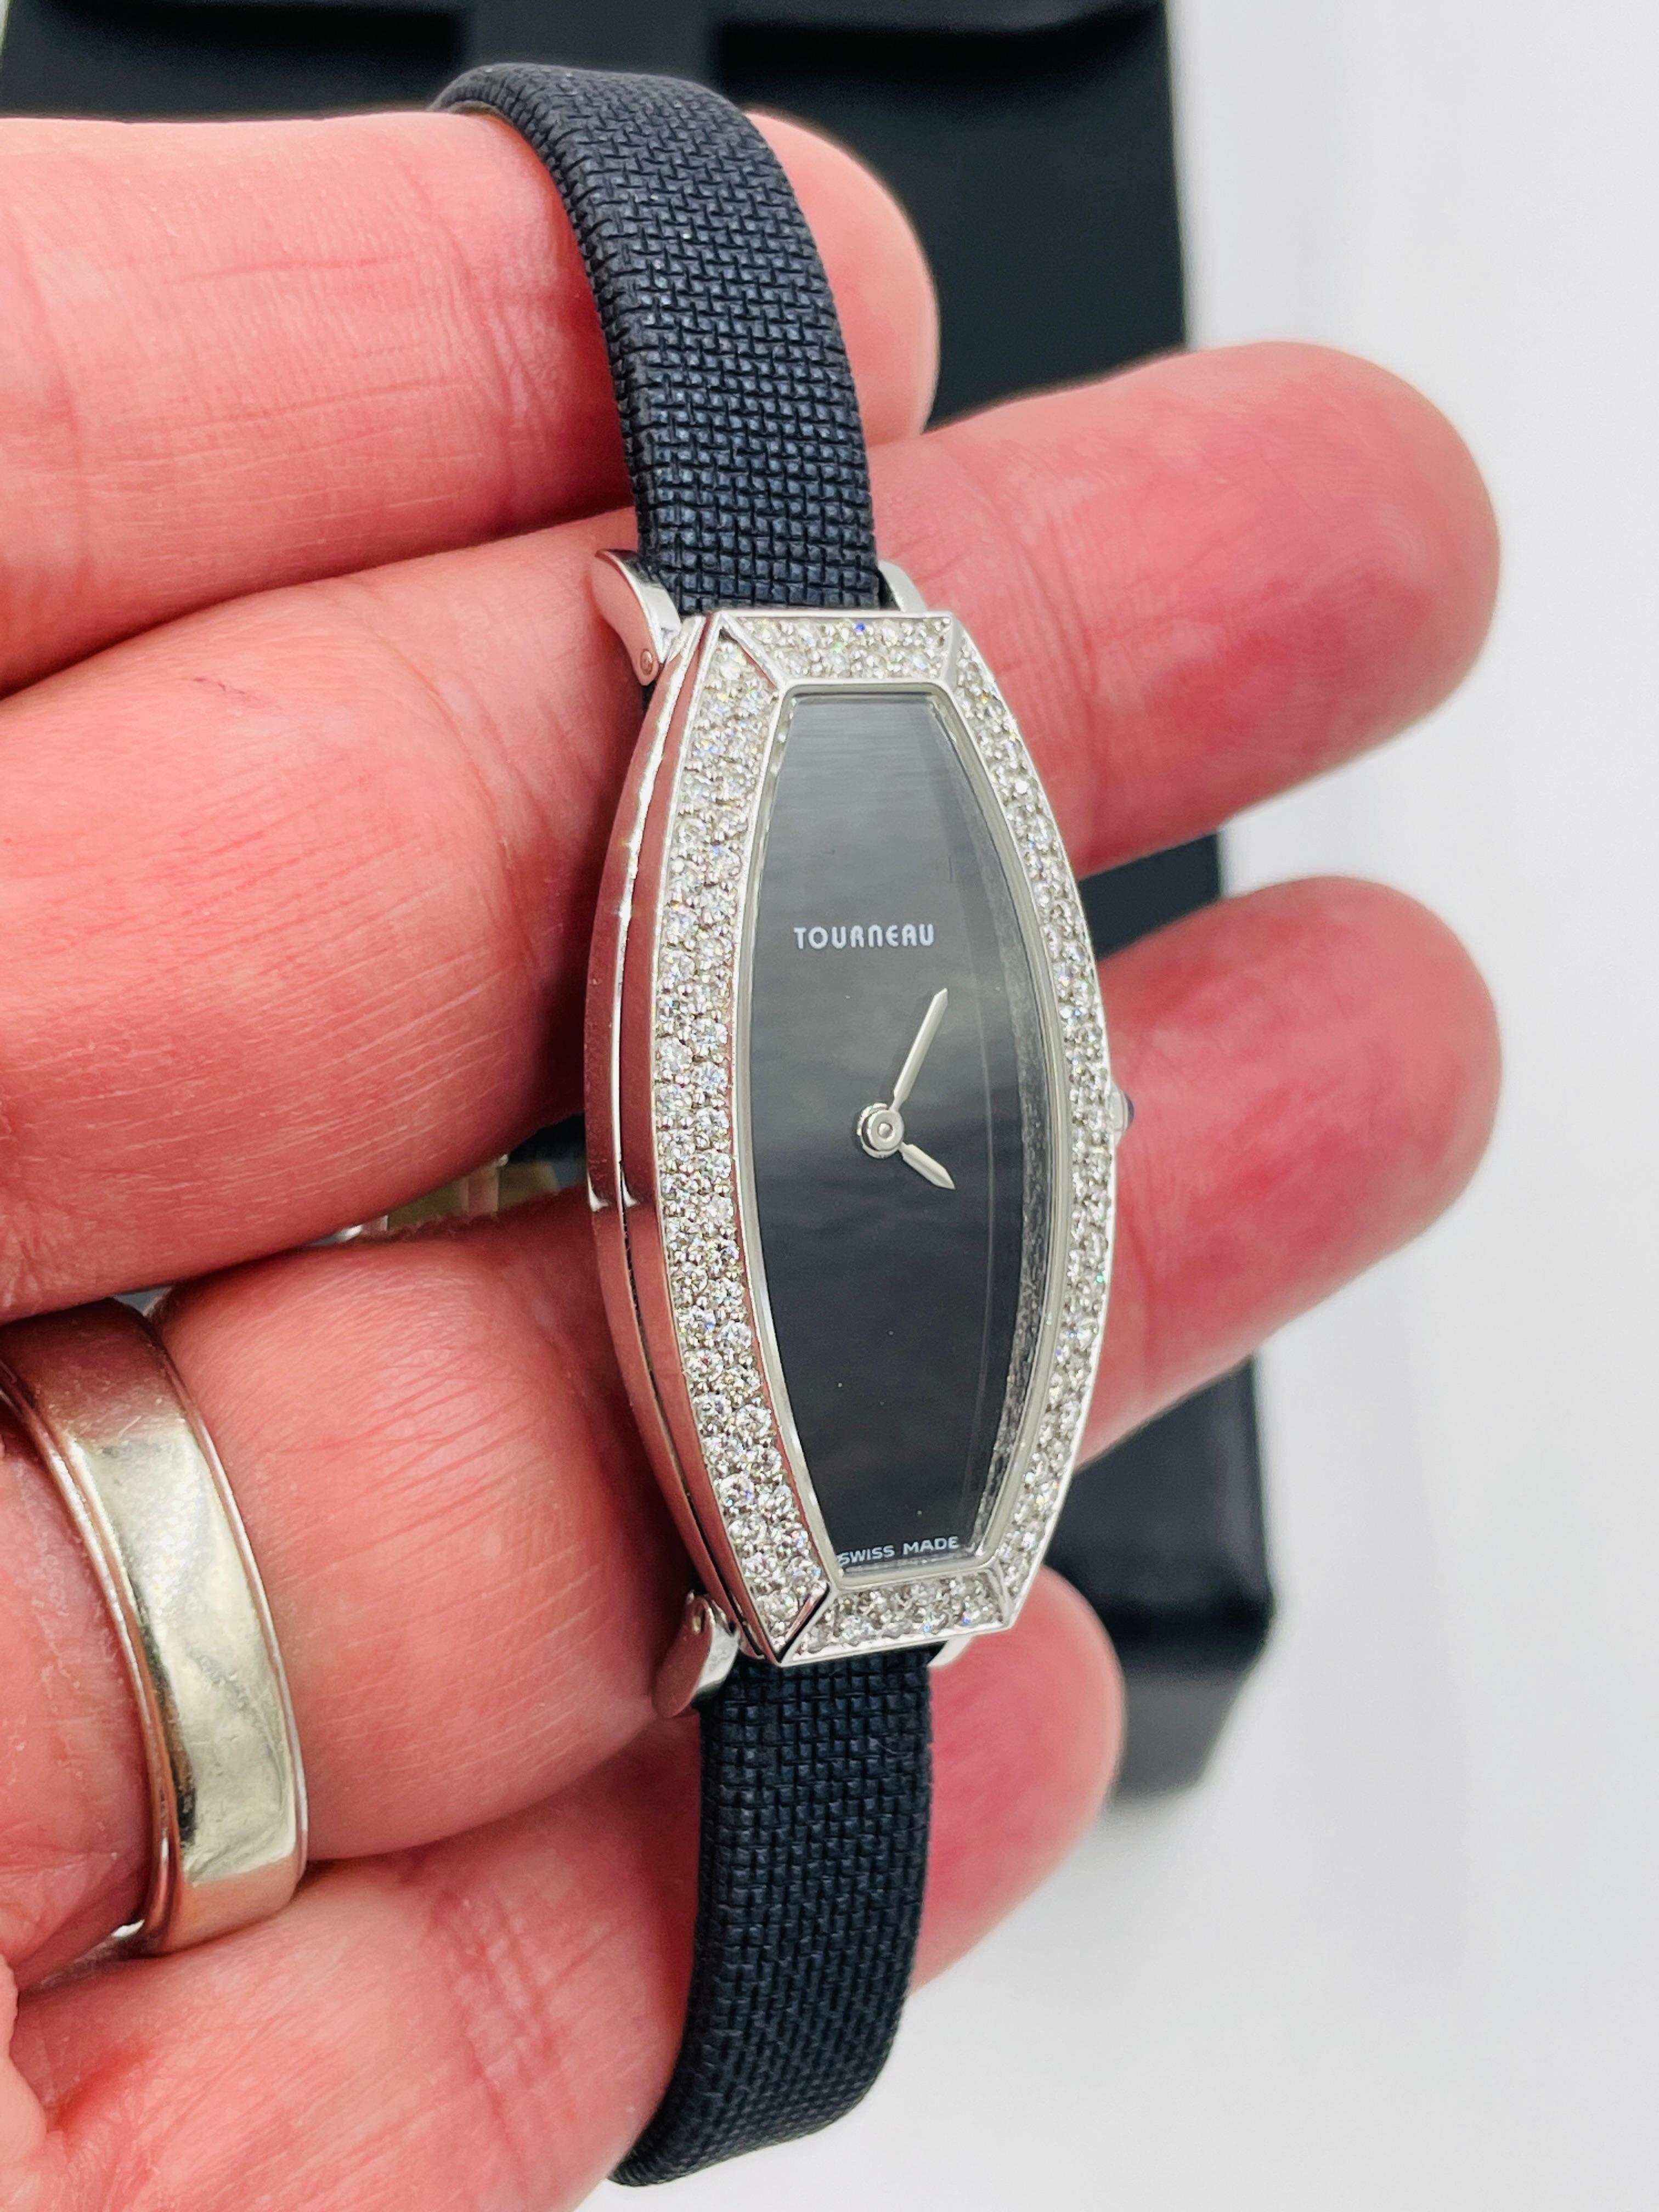 Montre-bracelet en or blanc à diamants pour dames, avec bracelet noir.
Cette montre Tourneau en or blanc 18 carats mesure environ 1